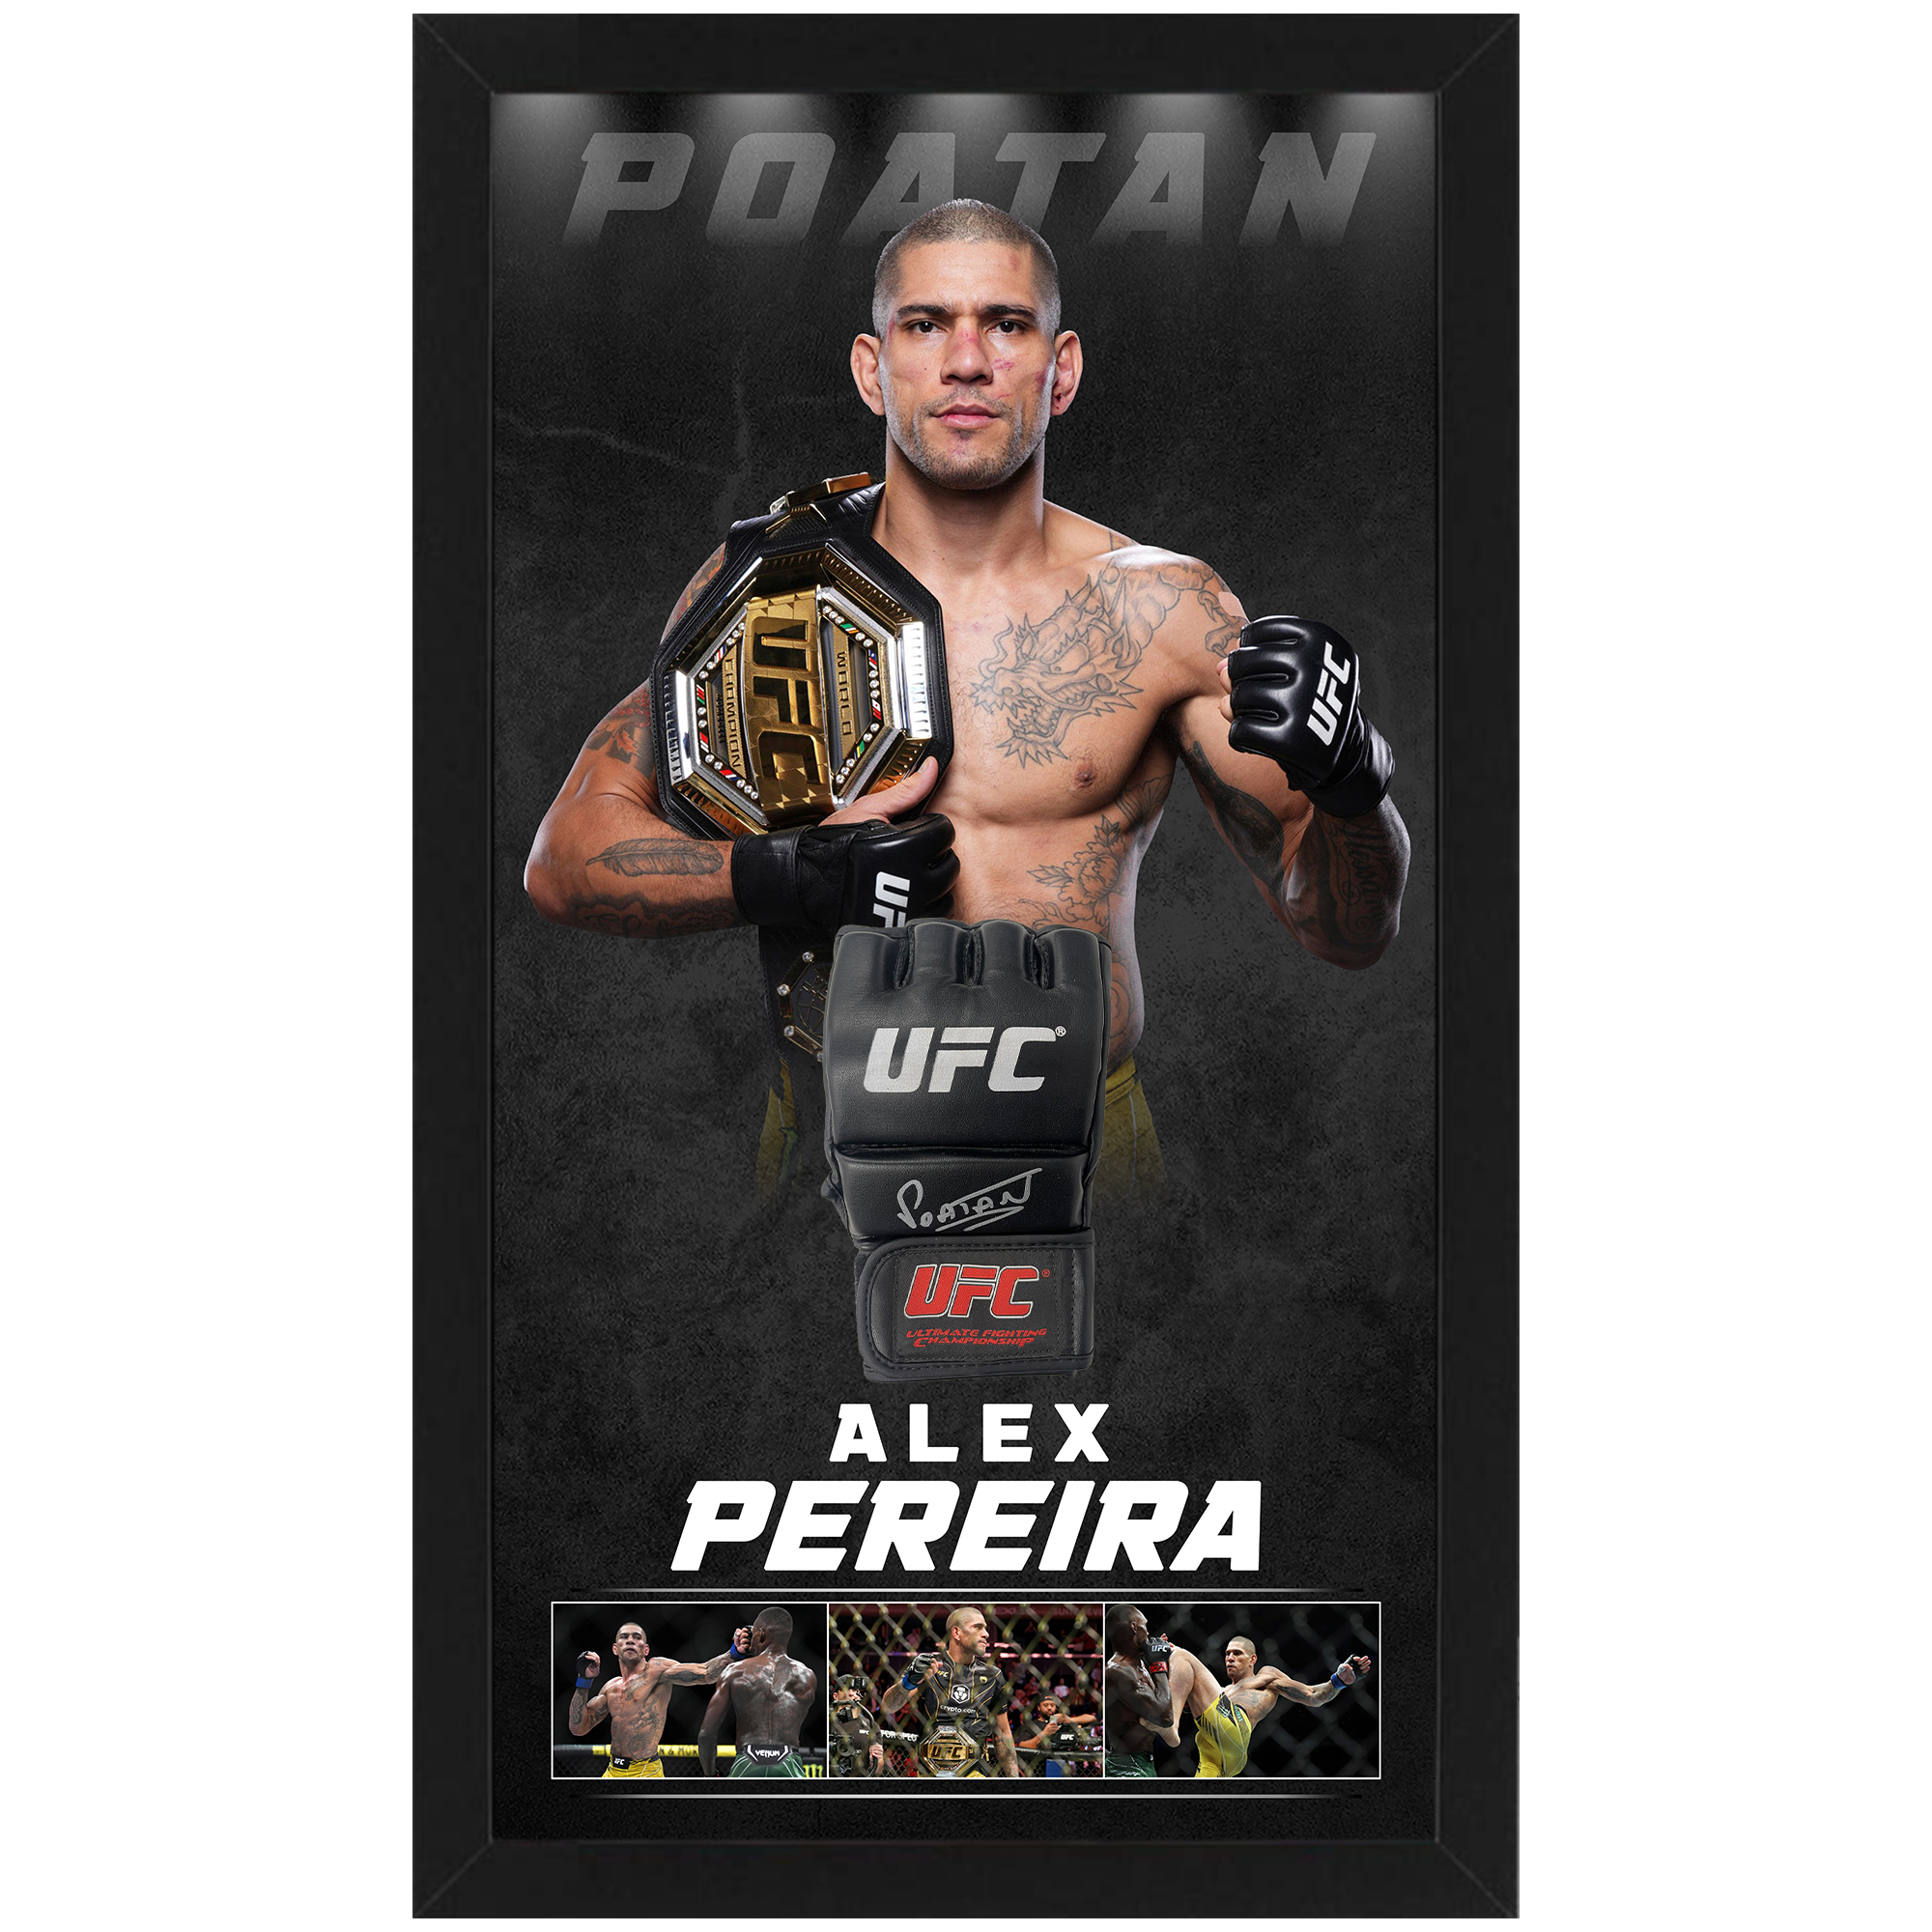 UFC – Alex Pereira “Poatan” Signed & Framed UFC...